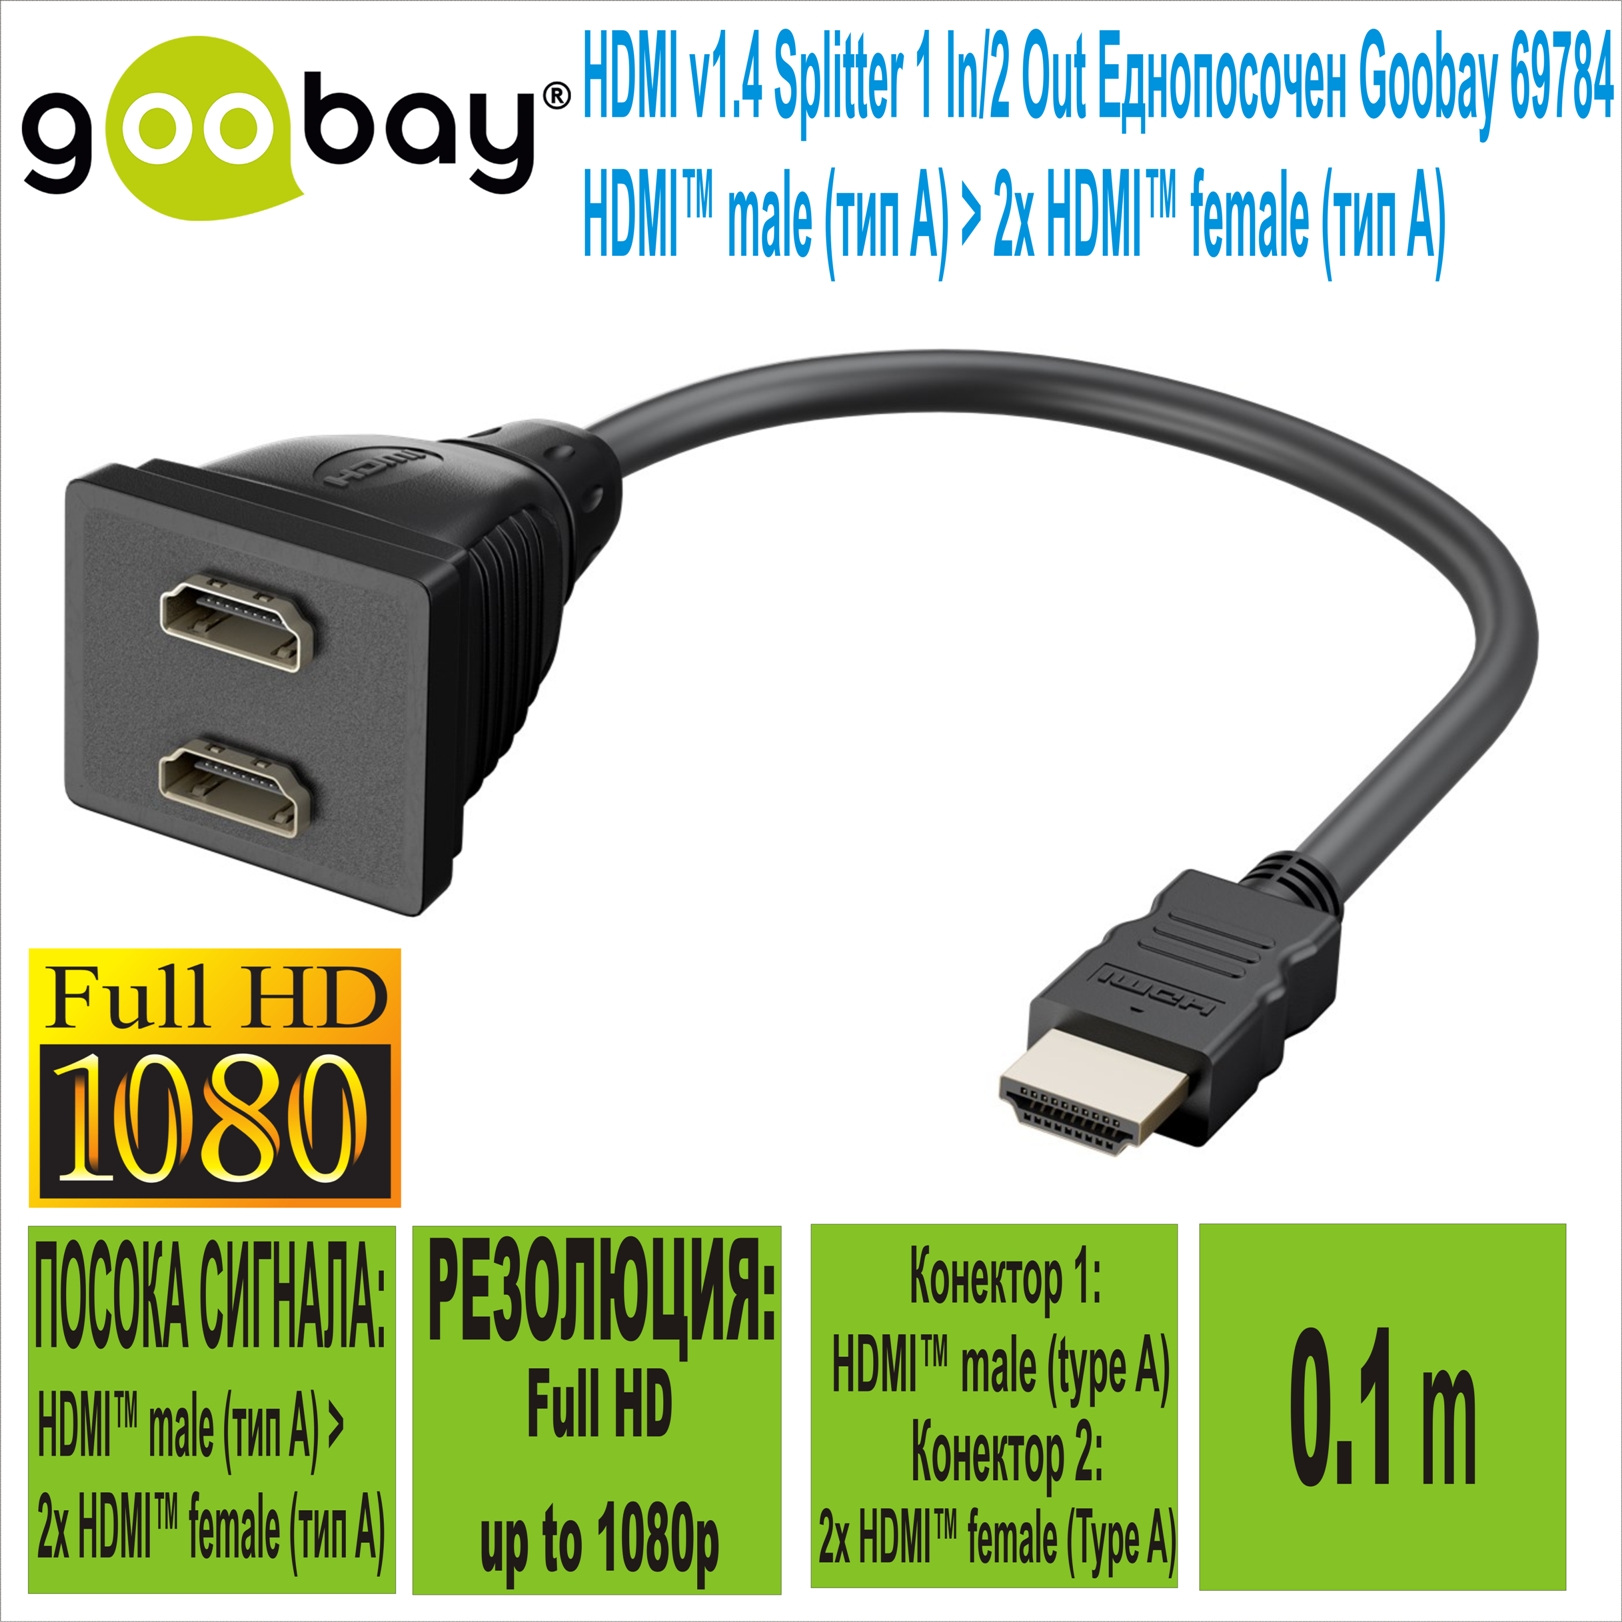 HDMI v1.4 Splitter 1 In/2 Out  Goobay 69784